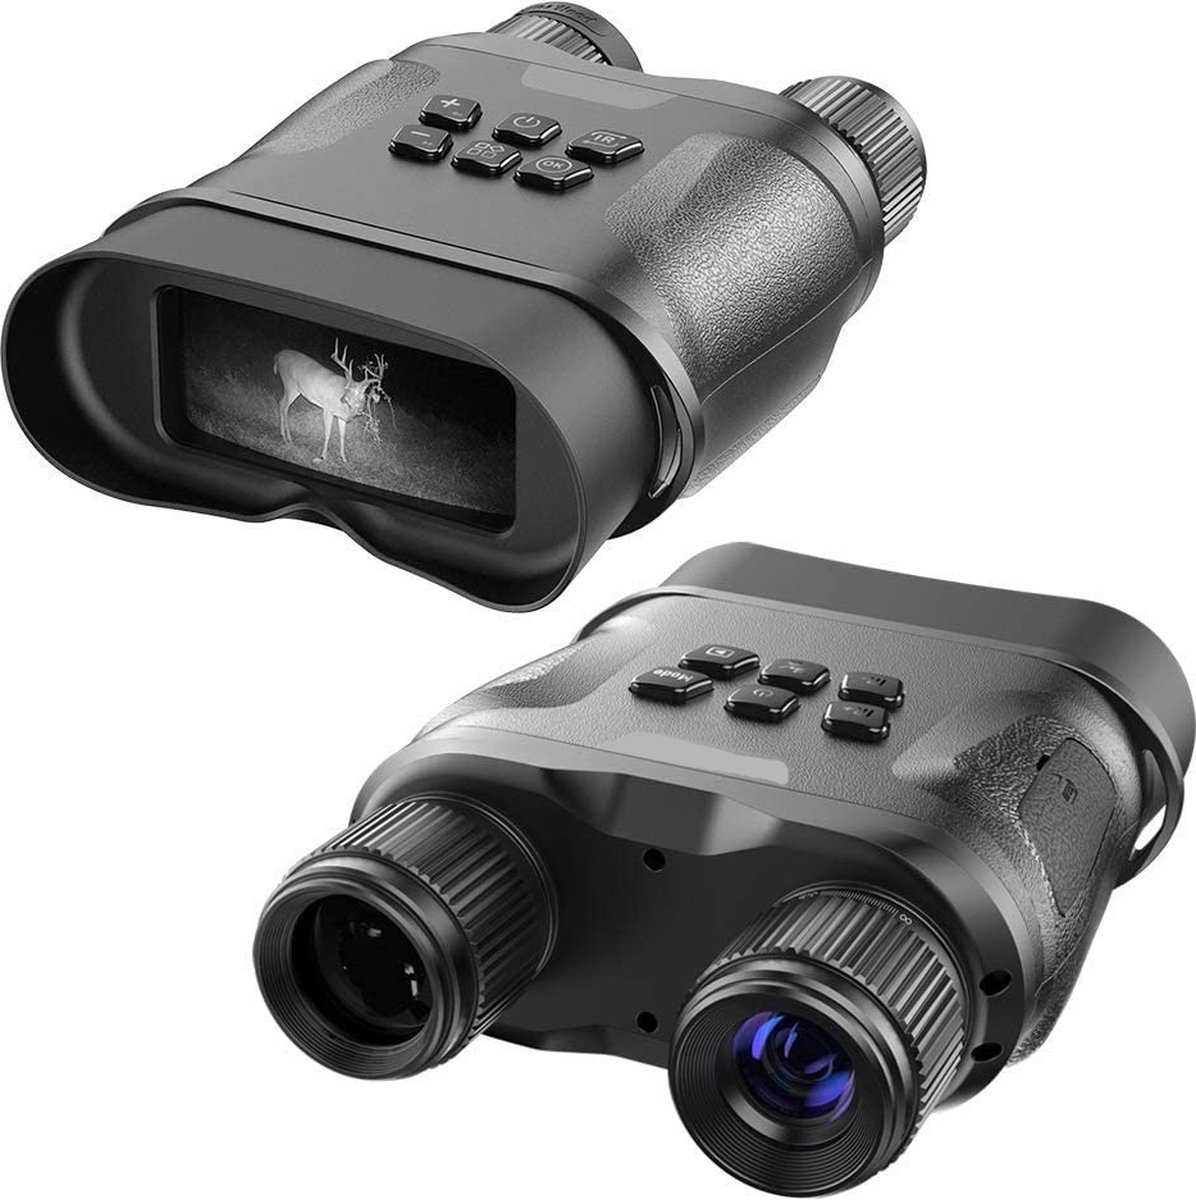 DrPhone NightVision2 – Digitale Infrarood Nachtzicht Verrekijker - Foto’s / Video’s maken – HD - 2.3 INCH Scherm – 4X Zoom – Nachtvisie tot 400 Meter - Zwart